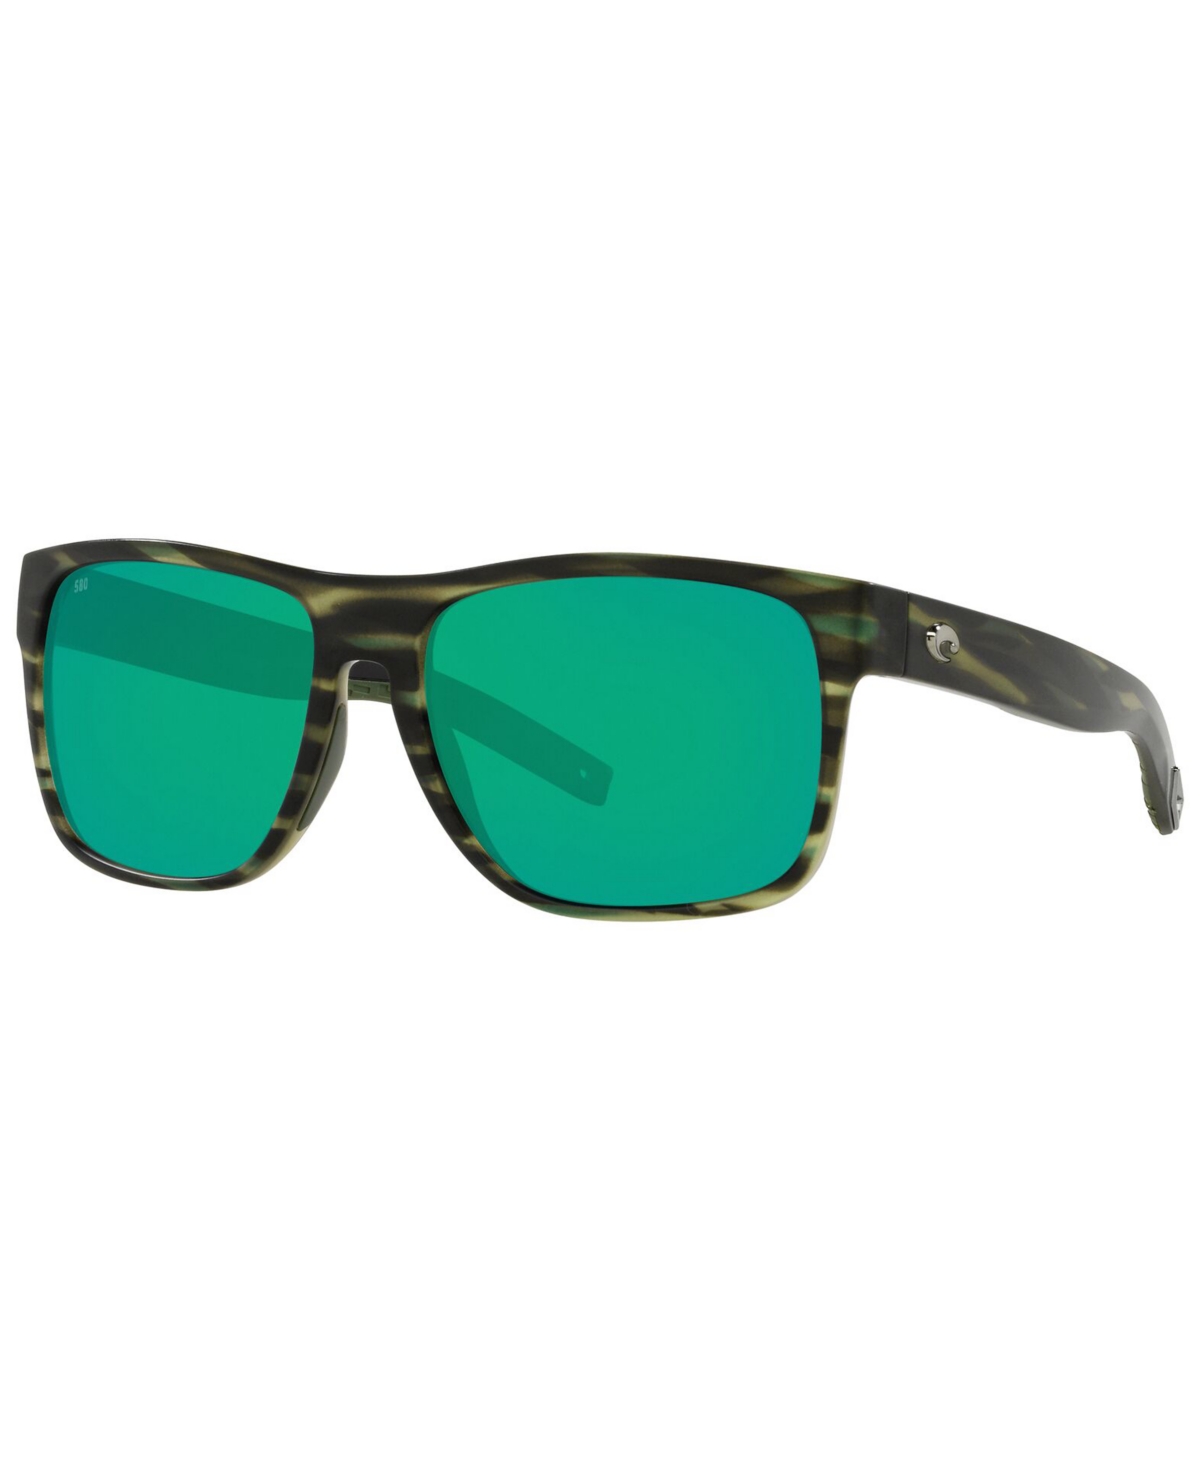 Costa Del Mar Spearo Xl Polarized Sunglasses, 6s9013 59 In Matte Reef,green Mirror P